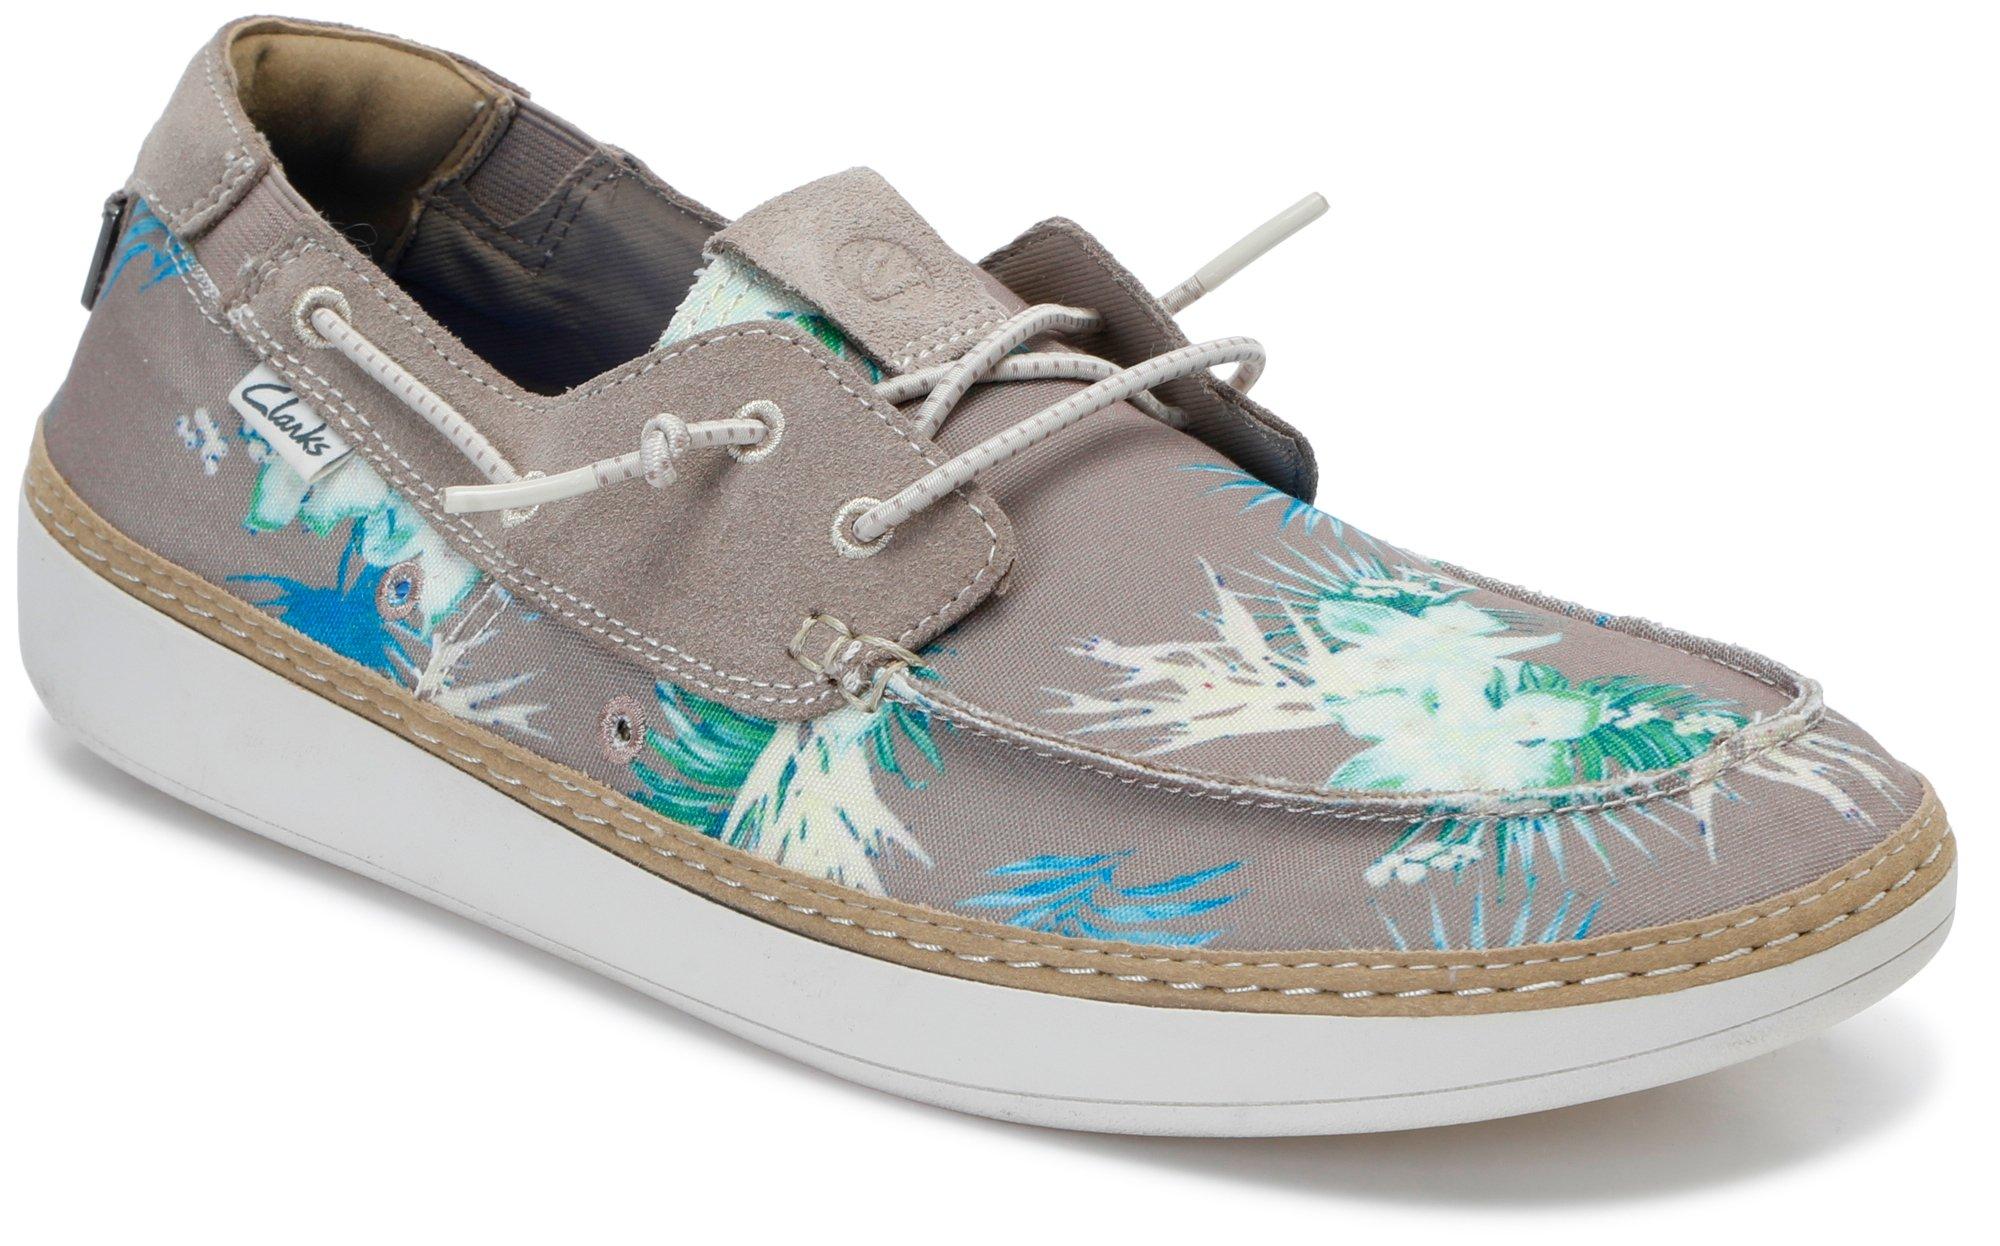 Men's Floral Print Boat Shoes